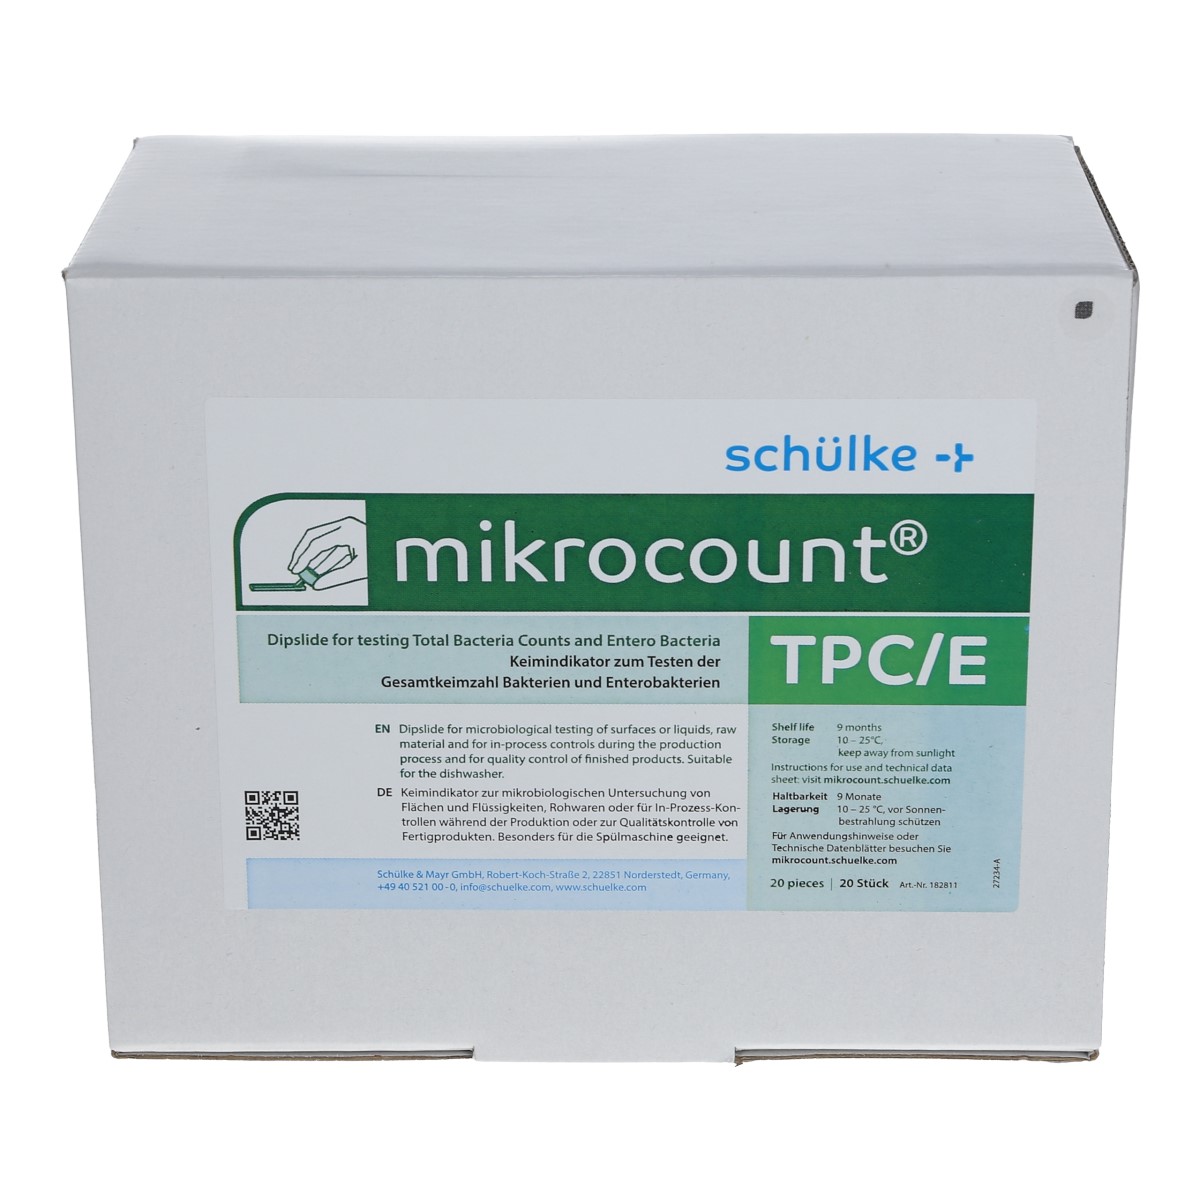 schülke mikrocount TPC/E